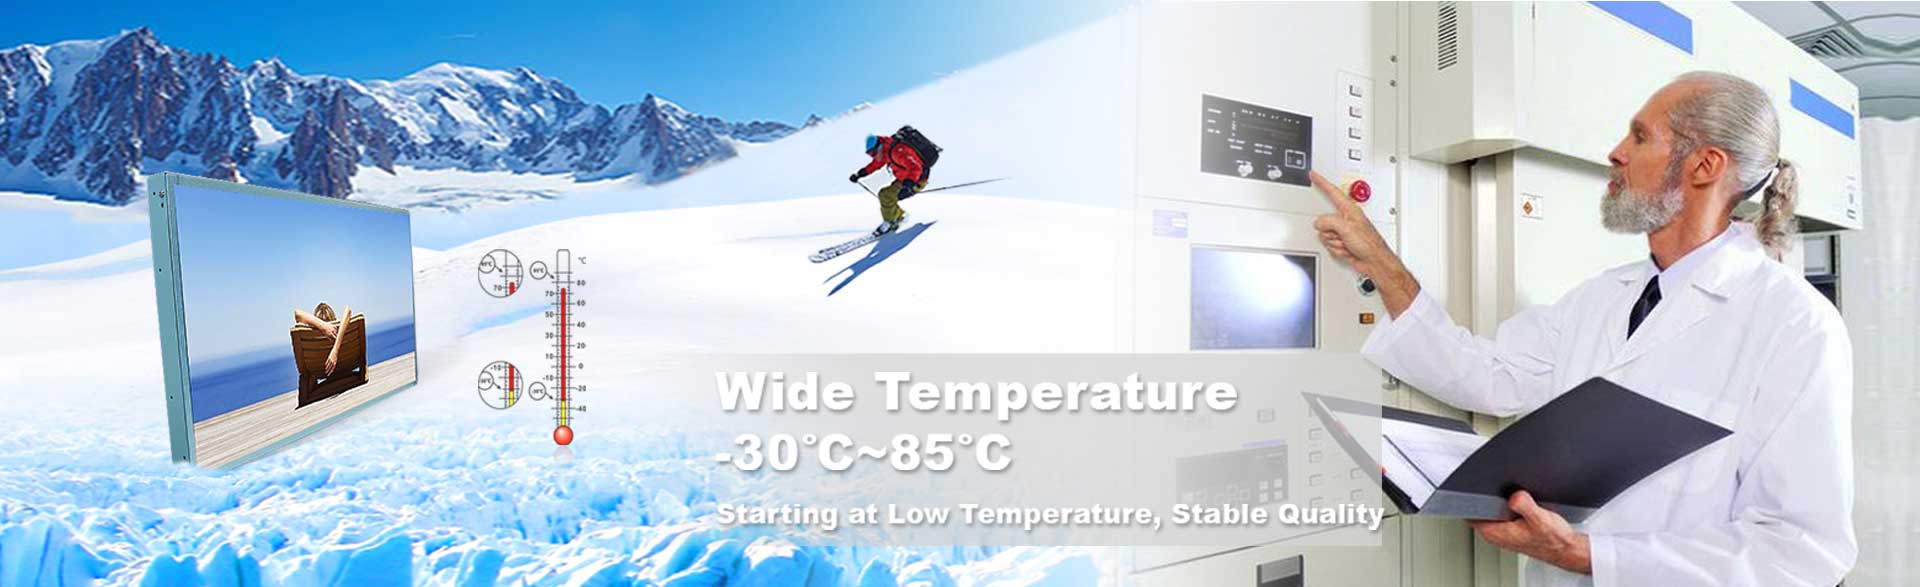 Monitor LCD a temperatura larga